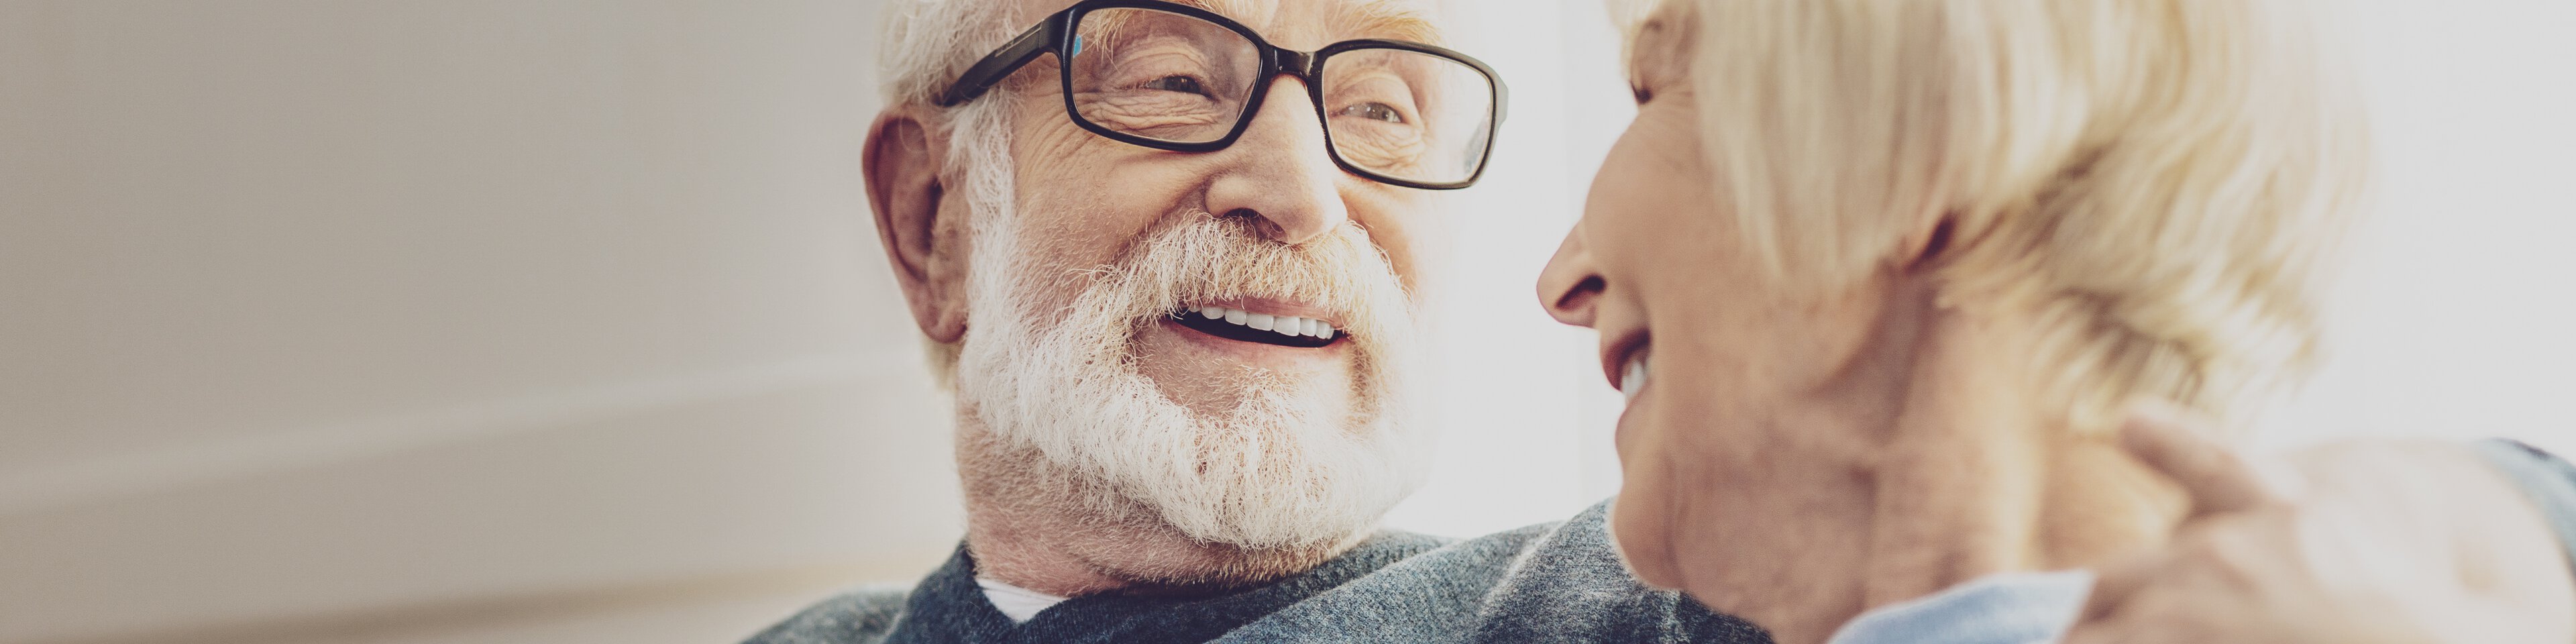 Ein Senior mit Brille sitzt neben einer Seniorin, umarmt sie und beide lächeln sich an. | © Fotolia 210582403 - Adobe Stock - Zinkevych